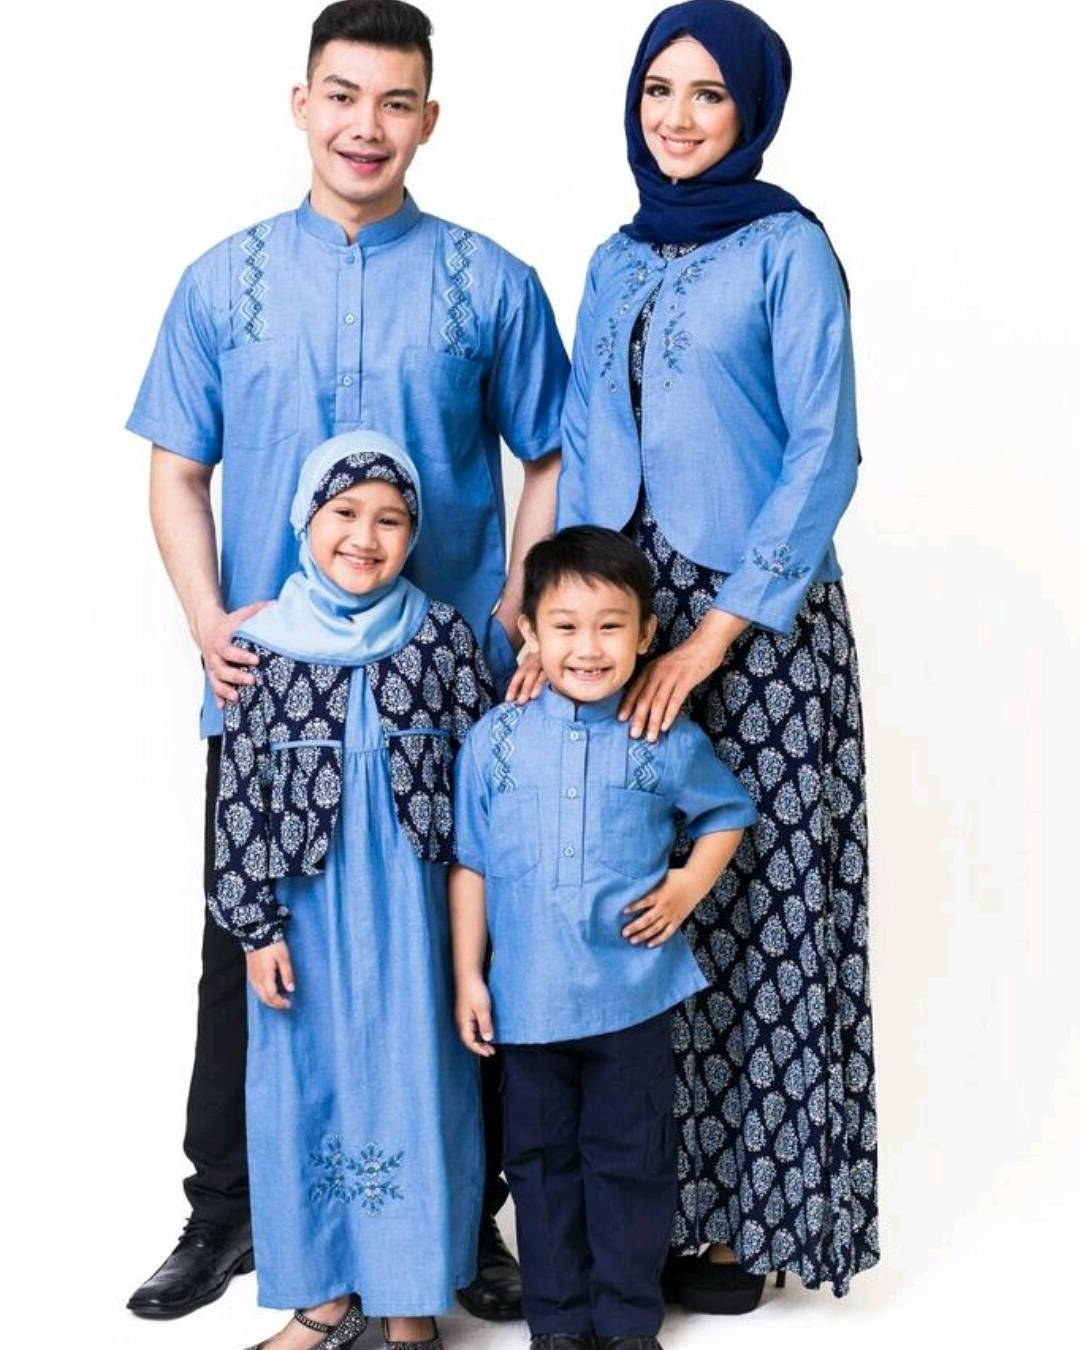 Bentuk Model Baju Lebaran Keluarga Artis Zwd9 Model Baju Keluarga Untuk Hari Raya Lebaran 2018